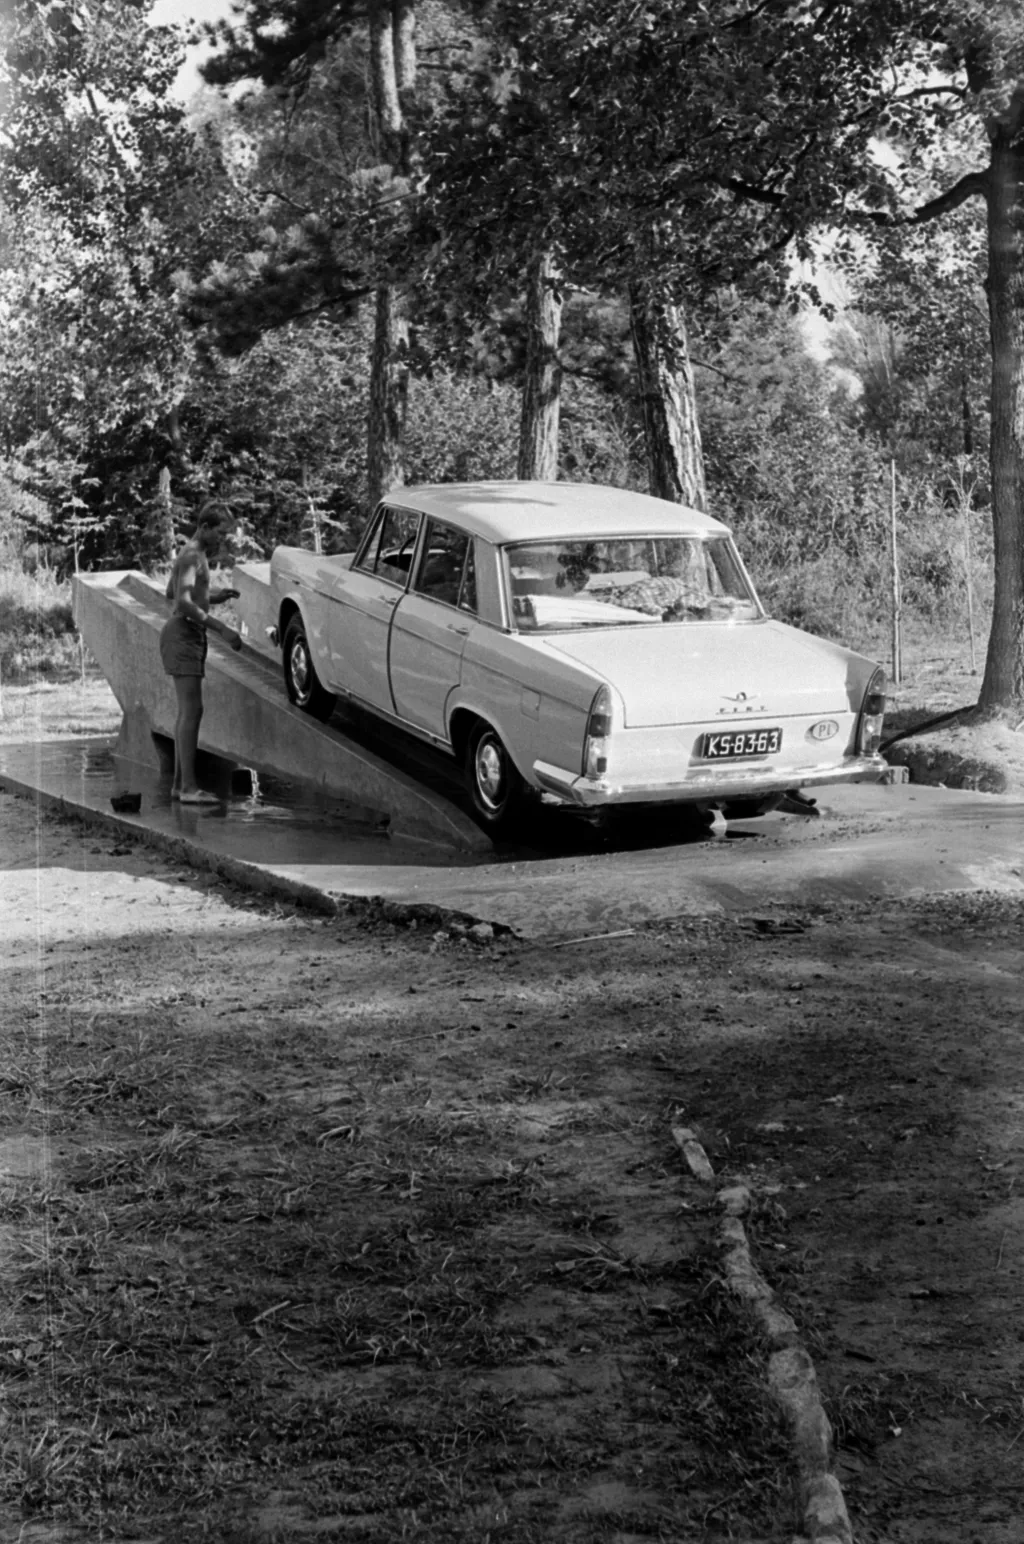 nyaralás galéria 2021 harmadik Magyarország,
Balatonföldvár
autómosás a kemping szerelőrámpáján.
ÉV
1962 